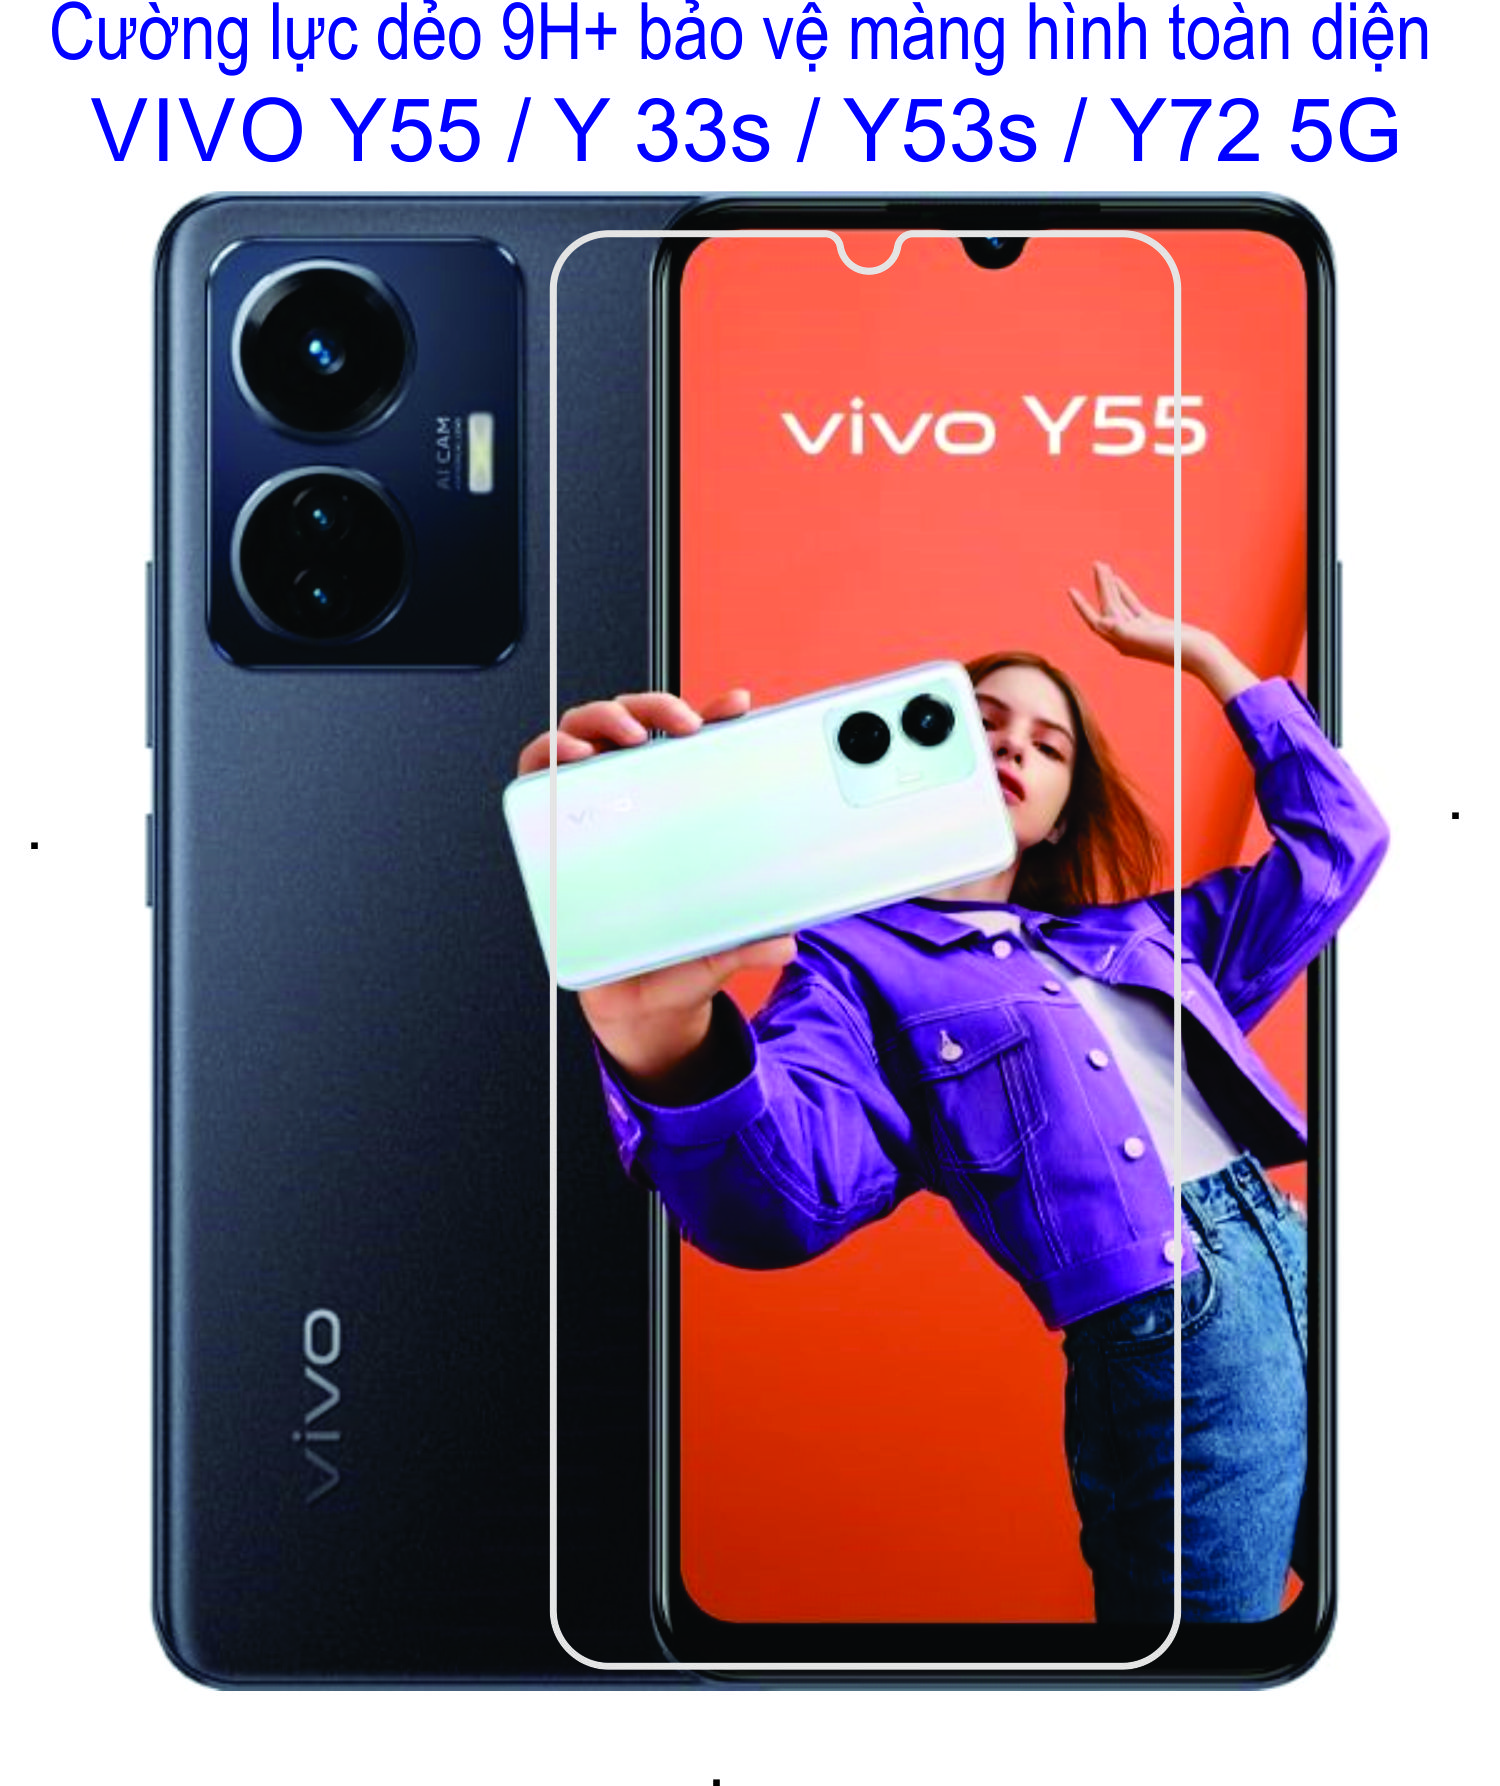 Cường lực dẻo 9h+ dành cho VIVO Y55 / Y33s / Y53s / Y72 5G Bảo vệ màng hình chống va đập, trầy xước toàn diện...